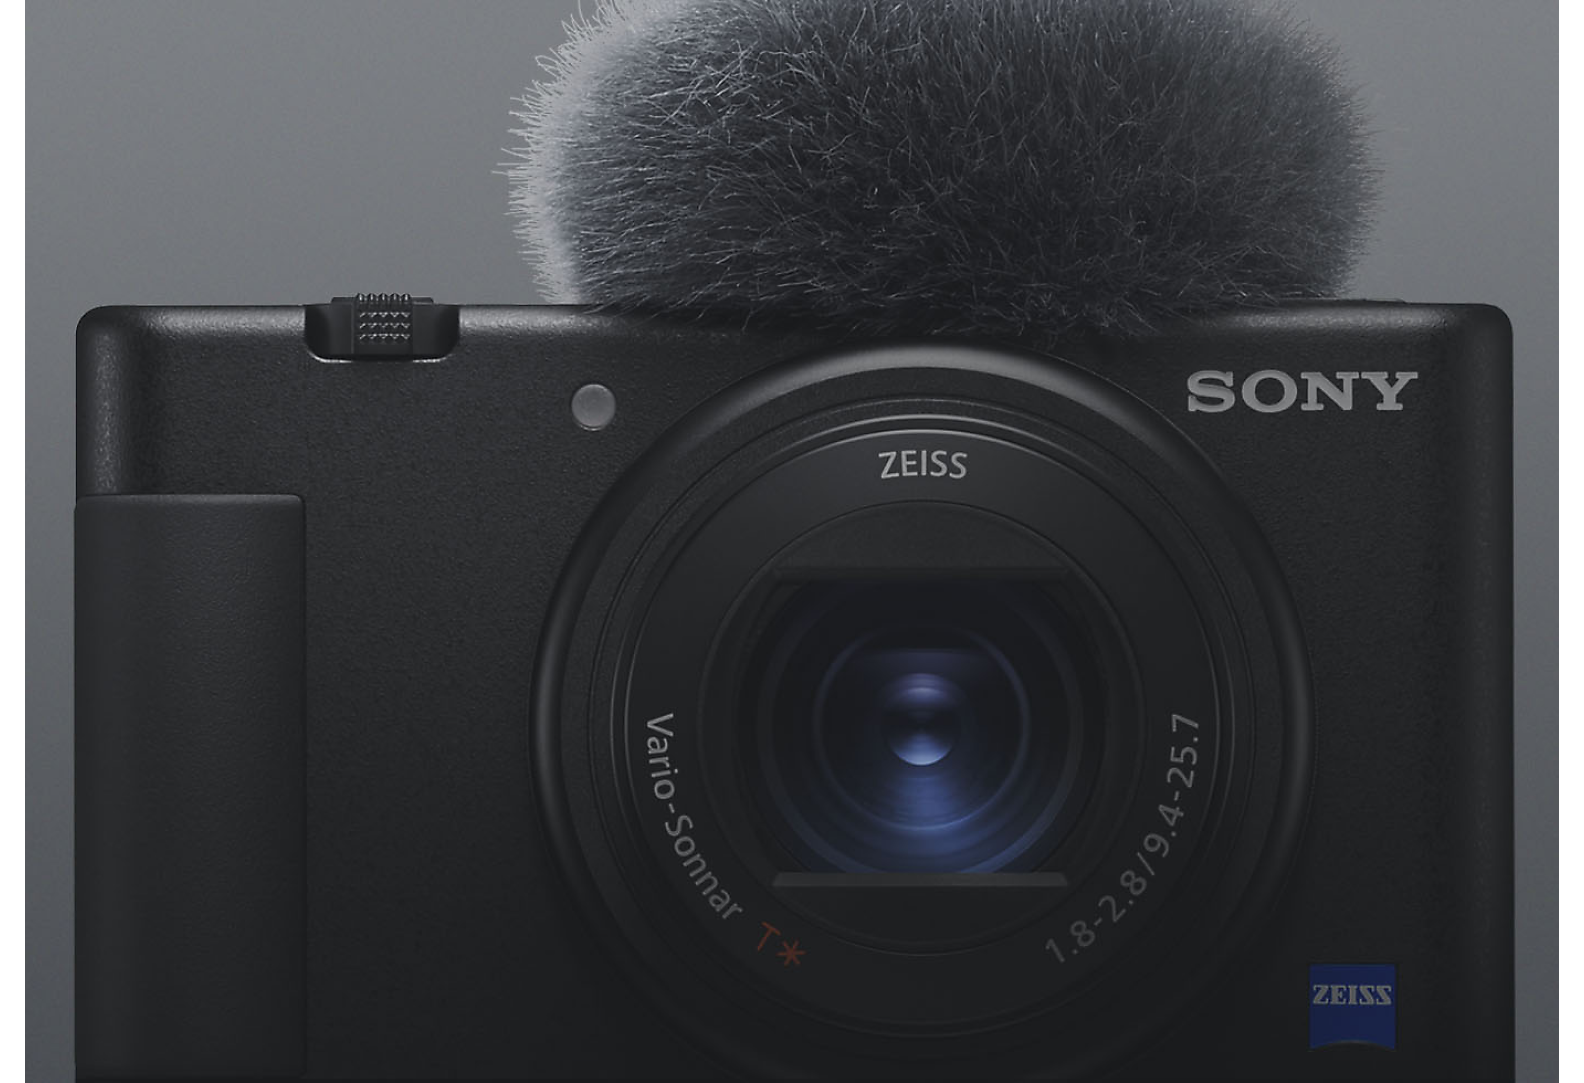 Vista frontal da câmara compacta Sony em preto com microfone acoplado